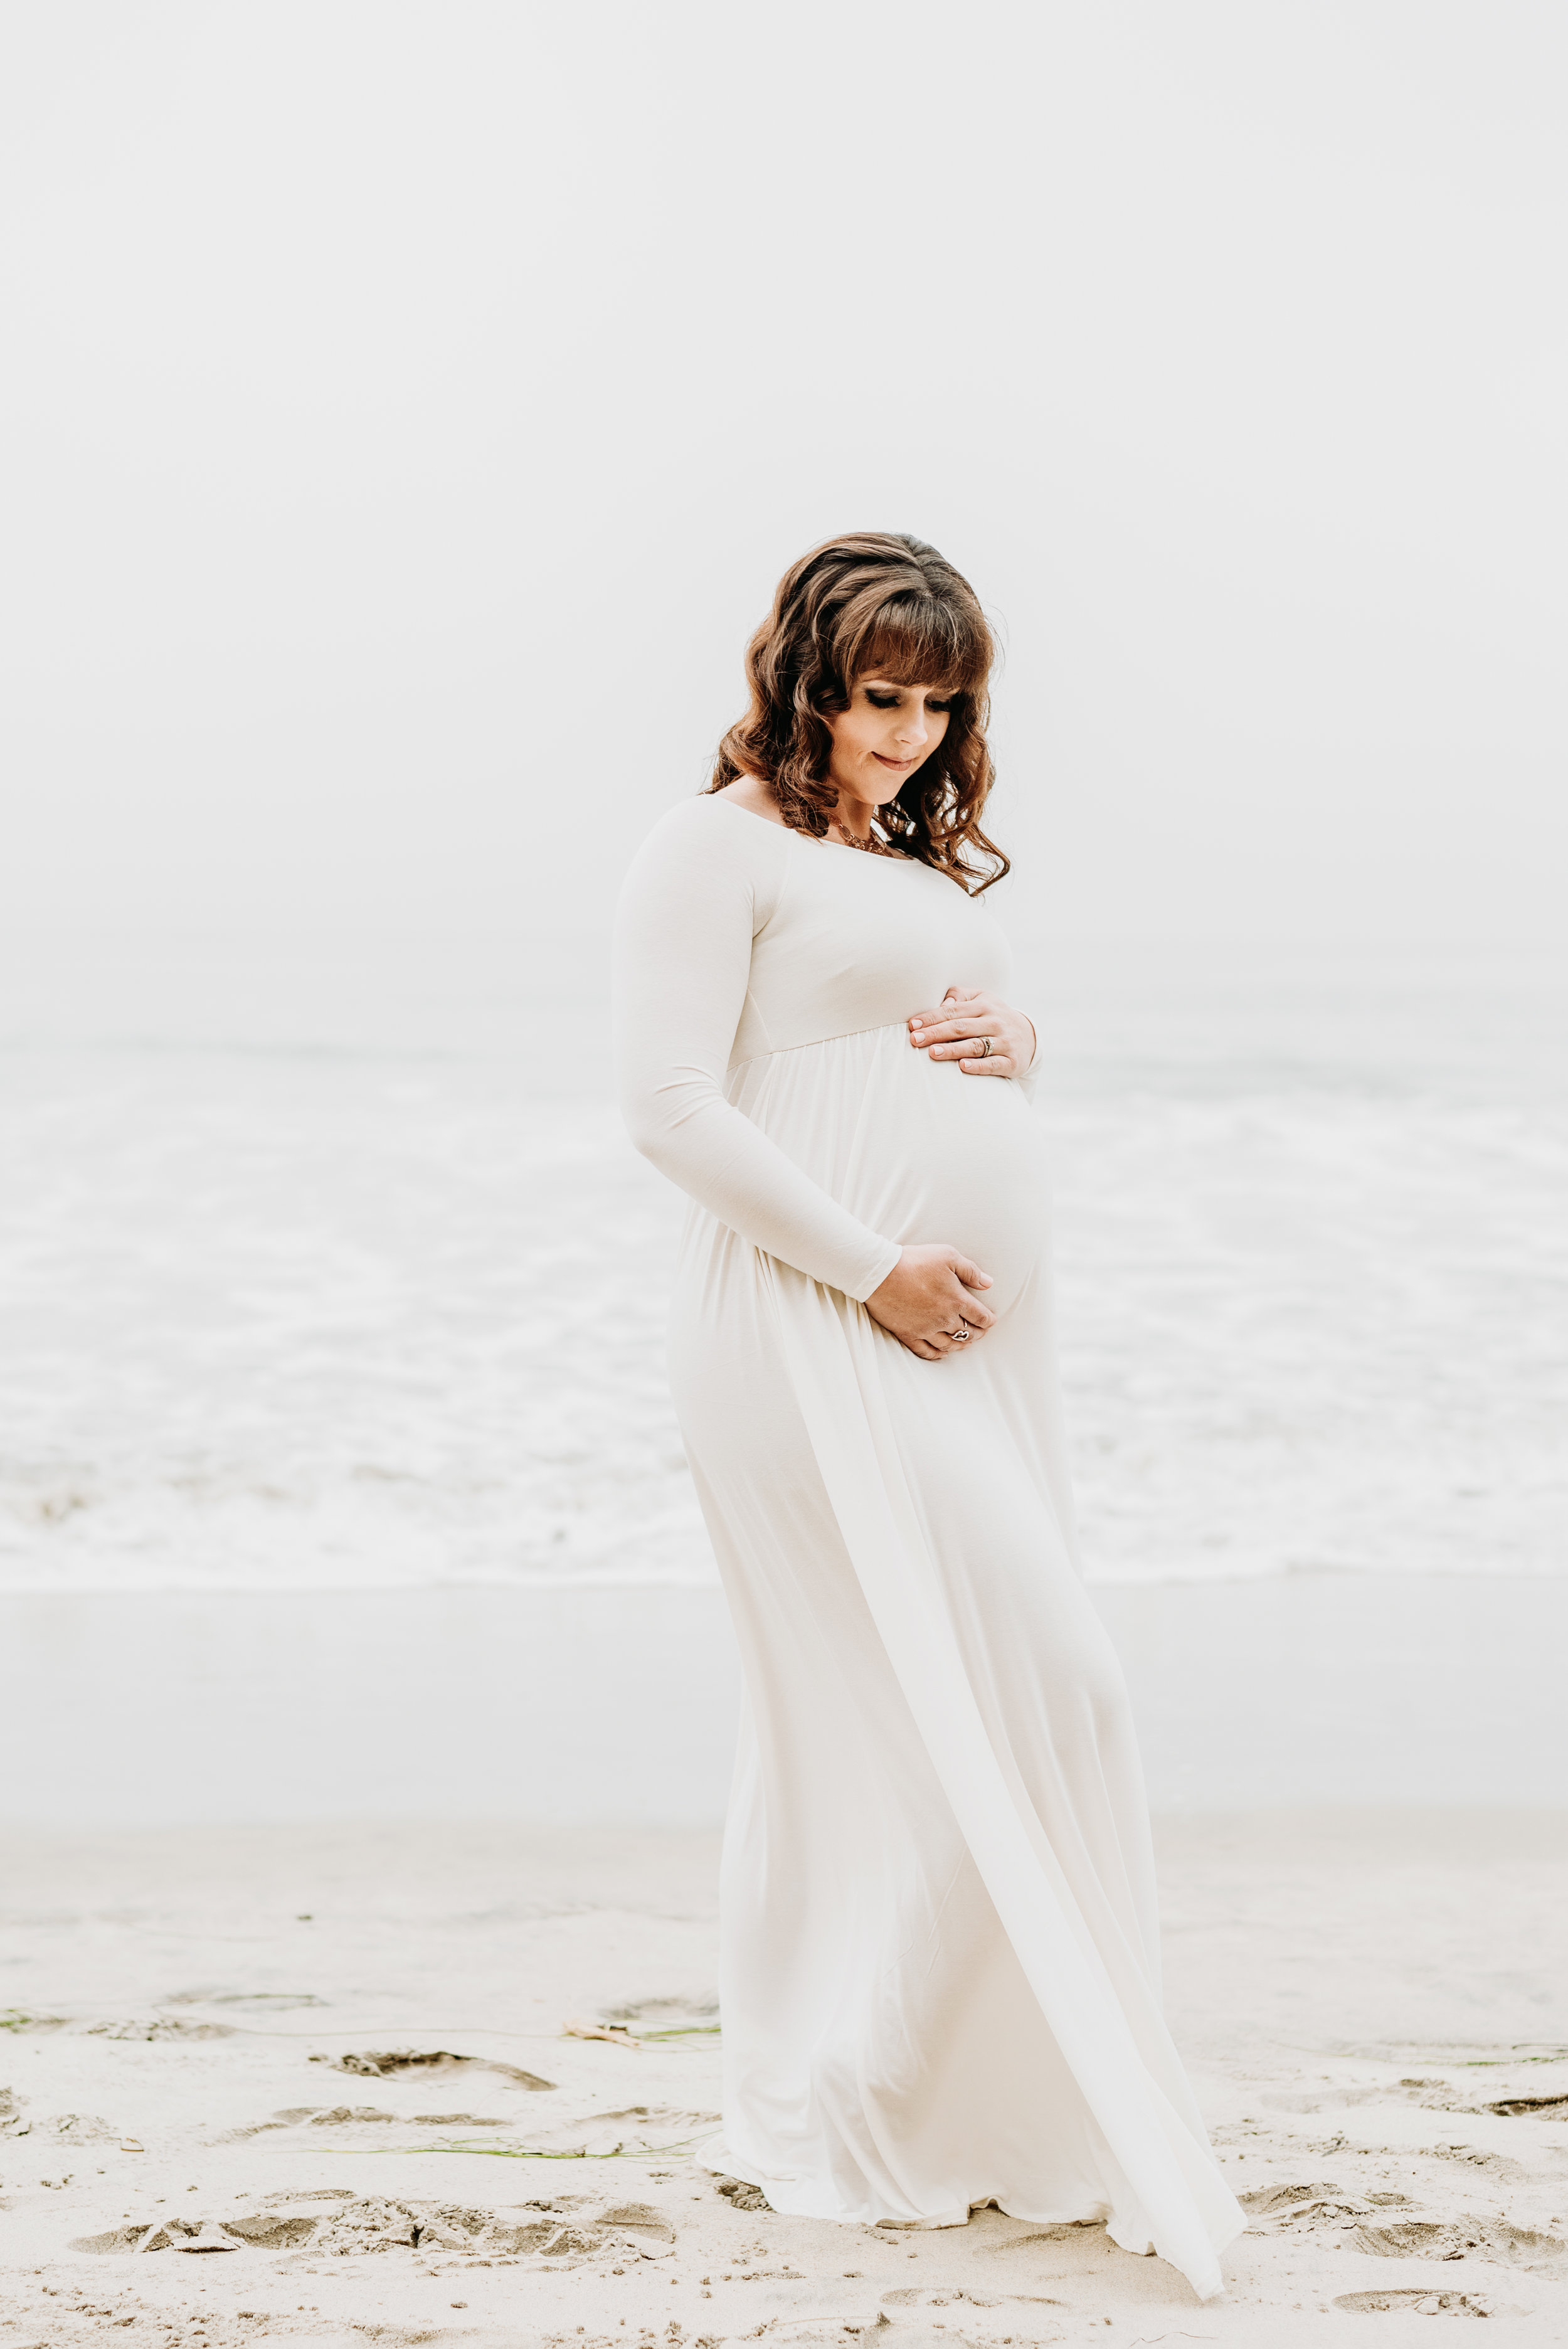 San Diego Maternity Photo Shoot | Solana Beach | Ernie & Fiona